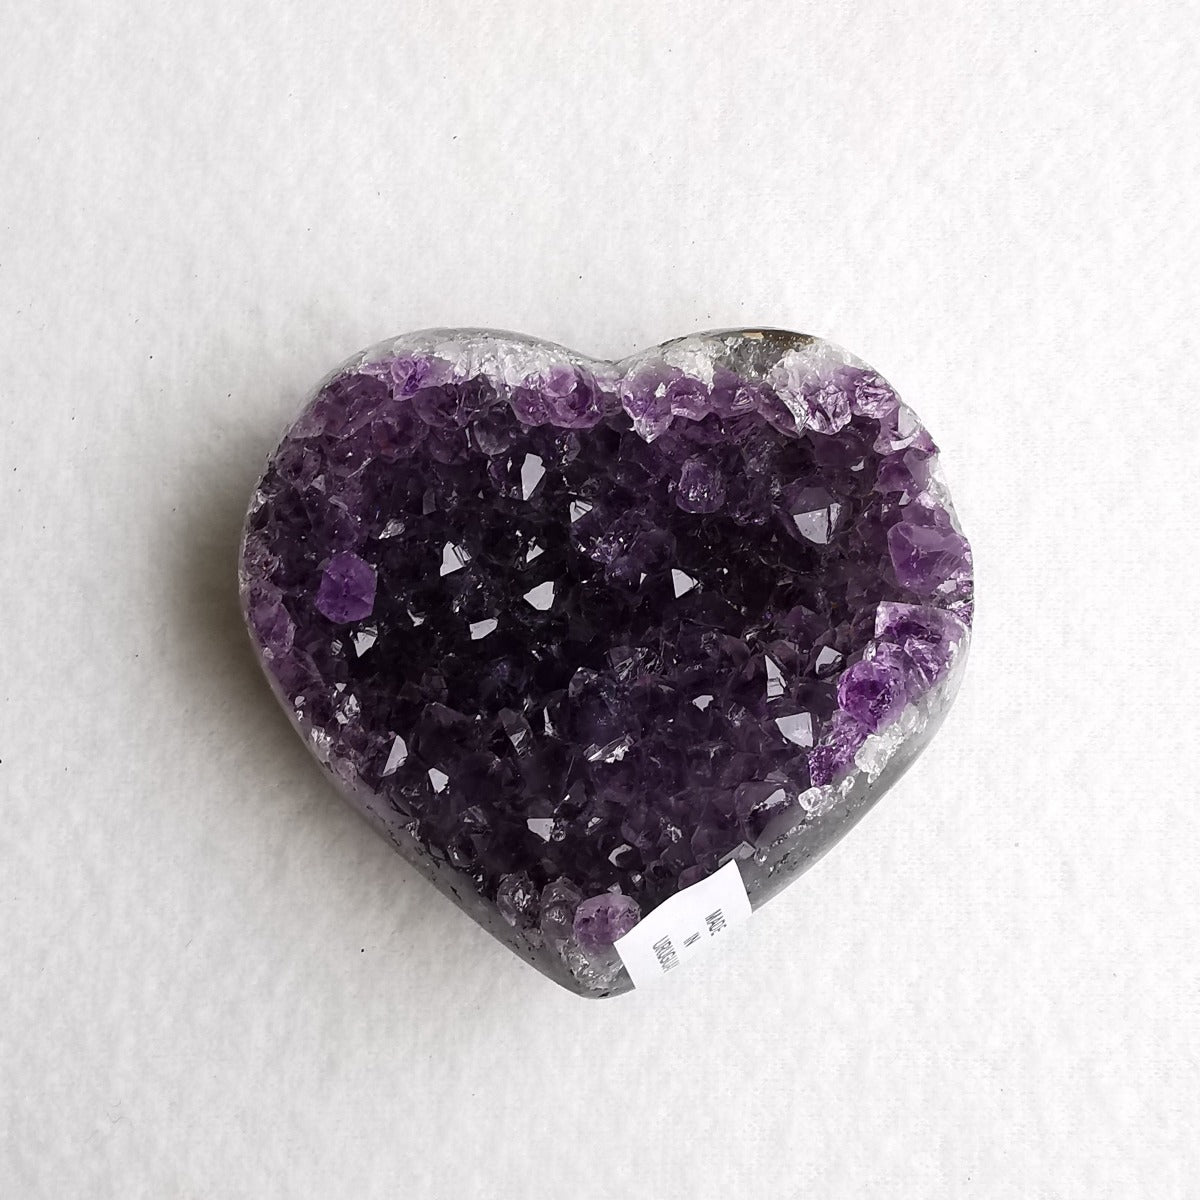 Amethyst krystallhjerte nr. 5 - Amethyst Crystal Heart